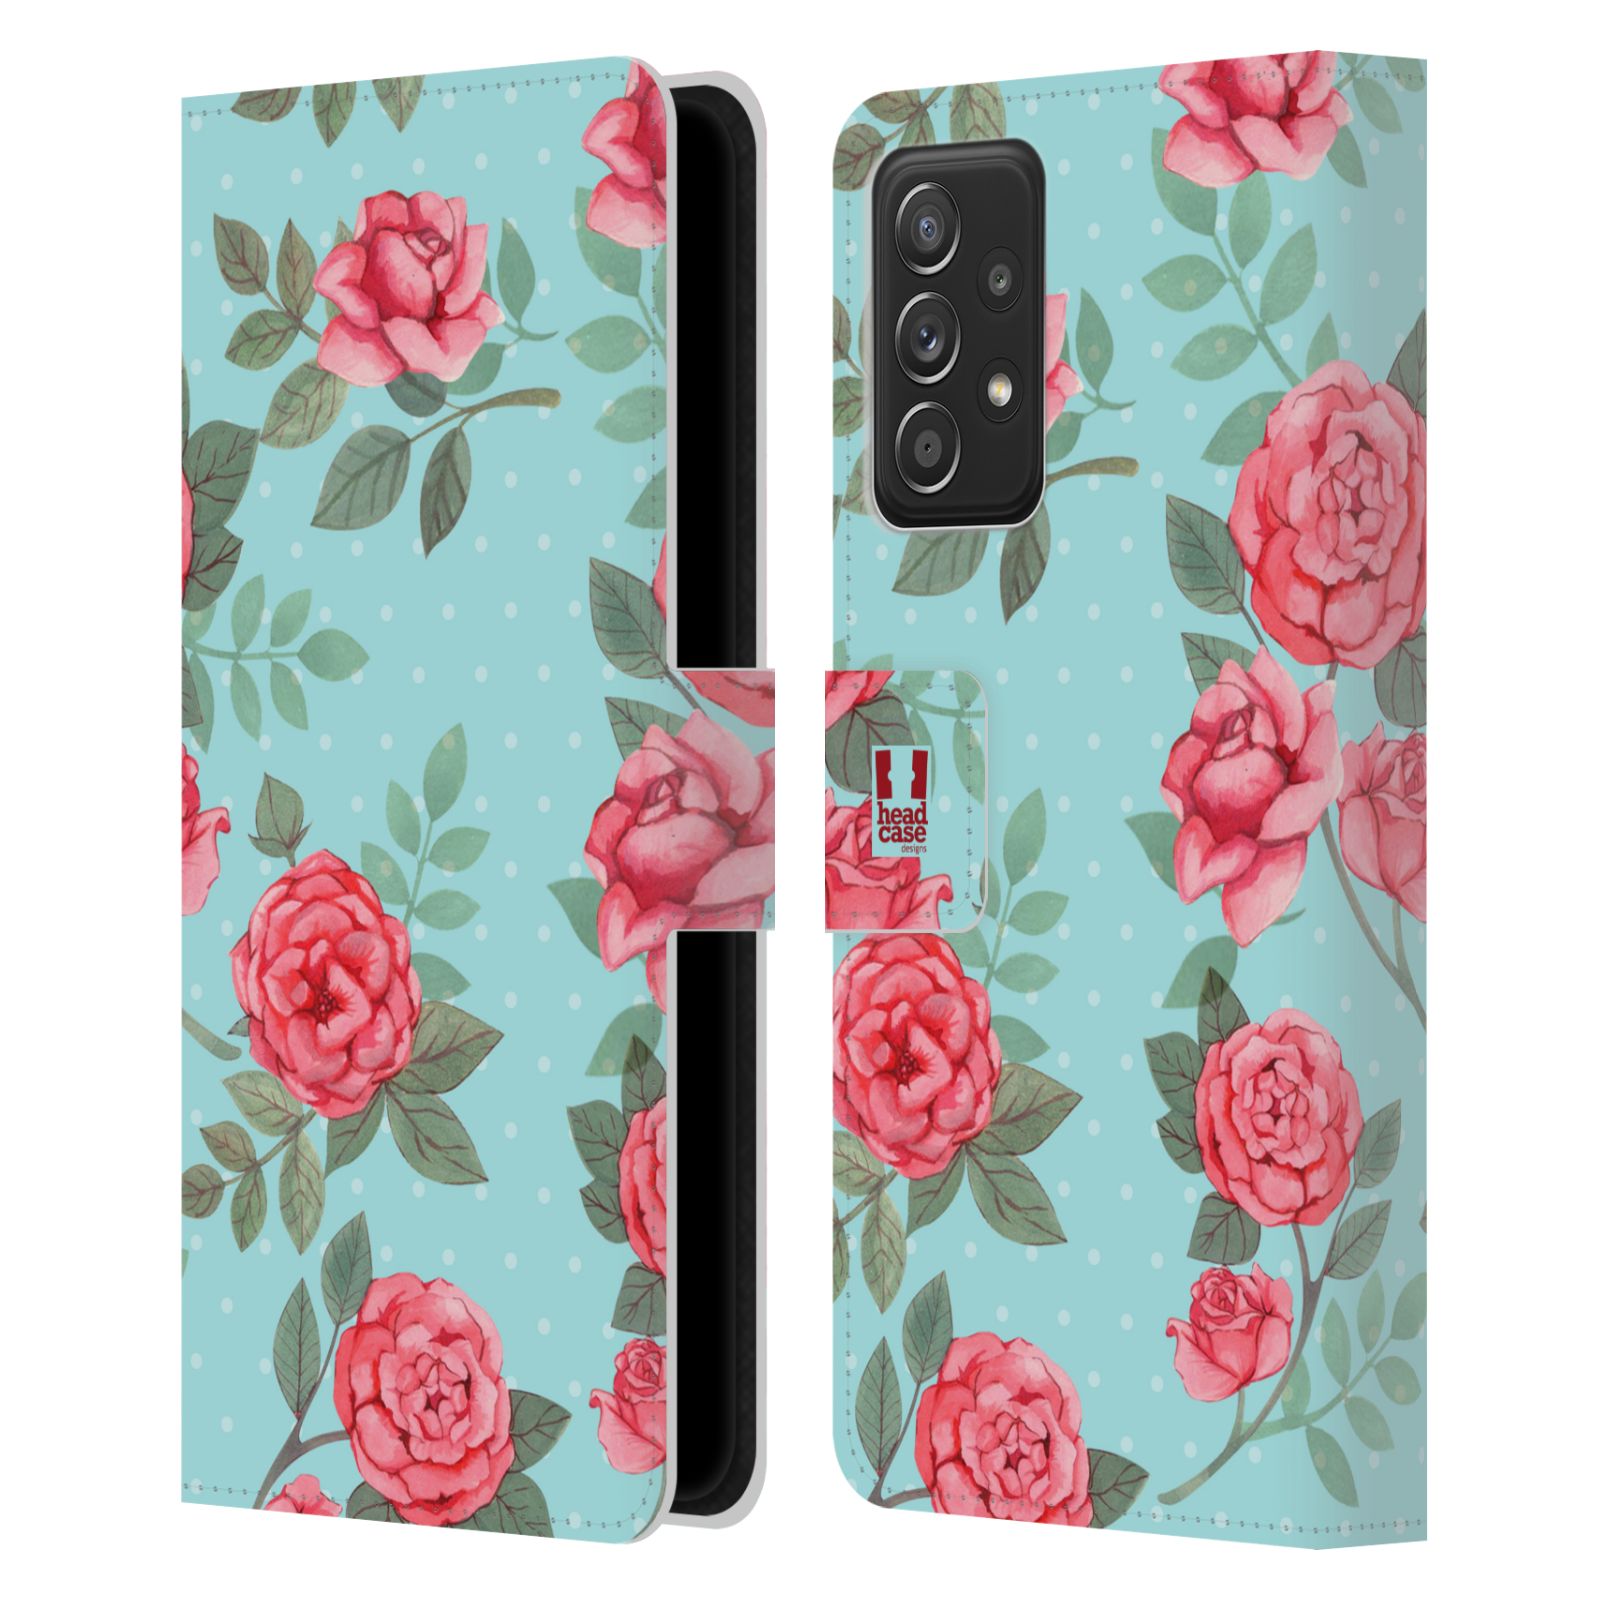 Pouzdro HEAD CASE na mobil Samsung Galaxy A52 / A52 5G / A52s 5G romantické květy velké růže modrá a růžová